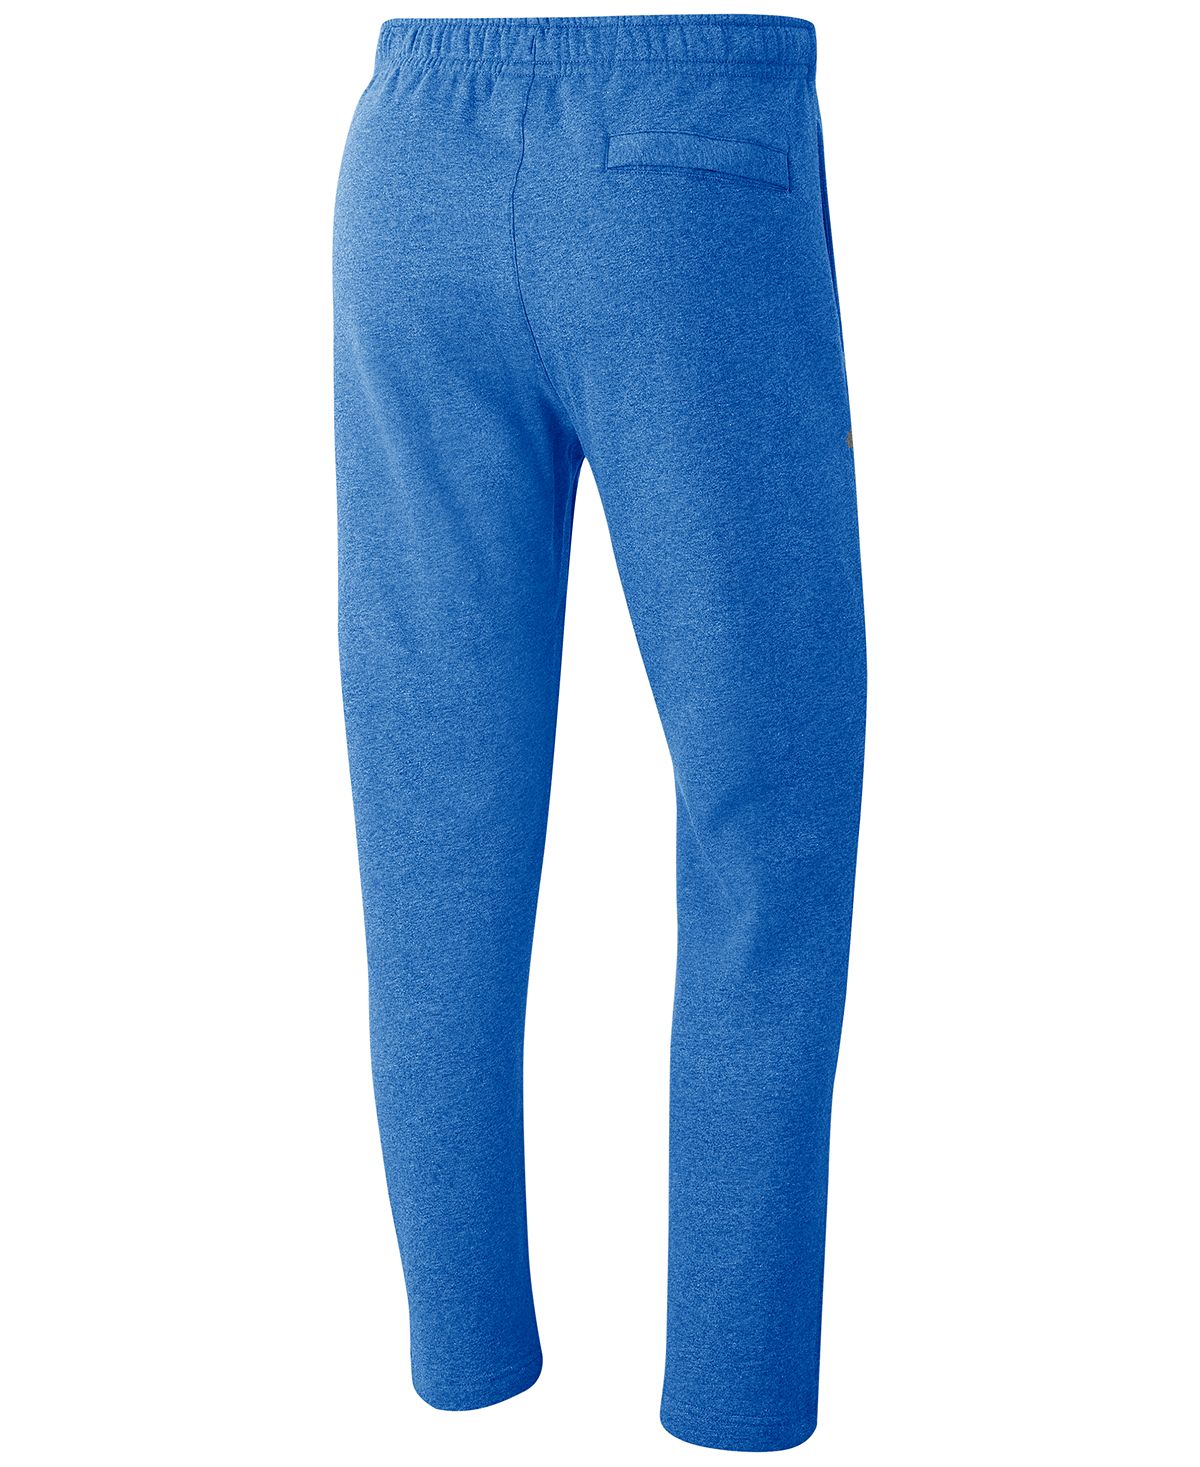 Nike Sportswear Club Fleece Sweatpants Pacific Blue/White